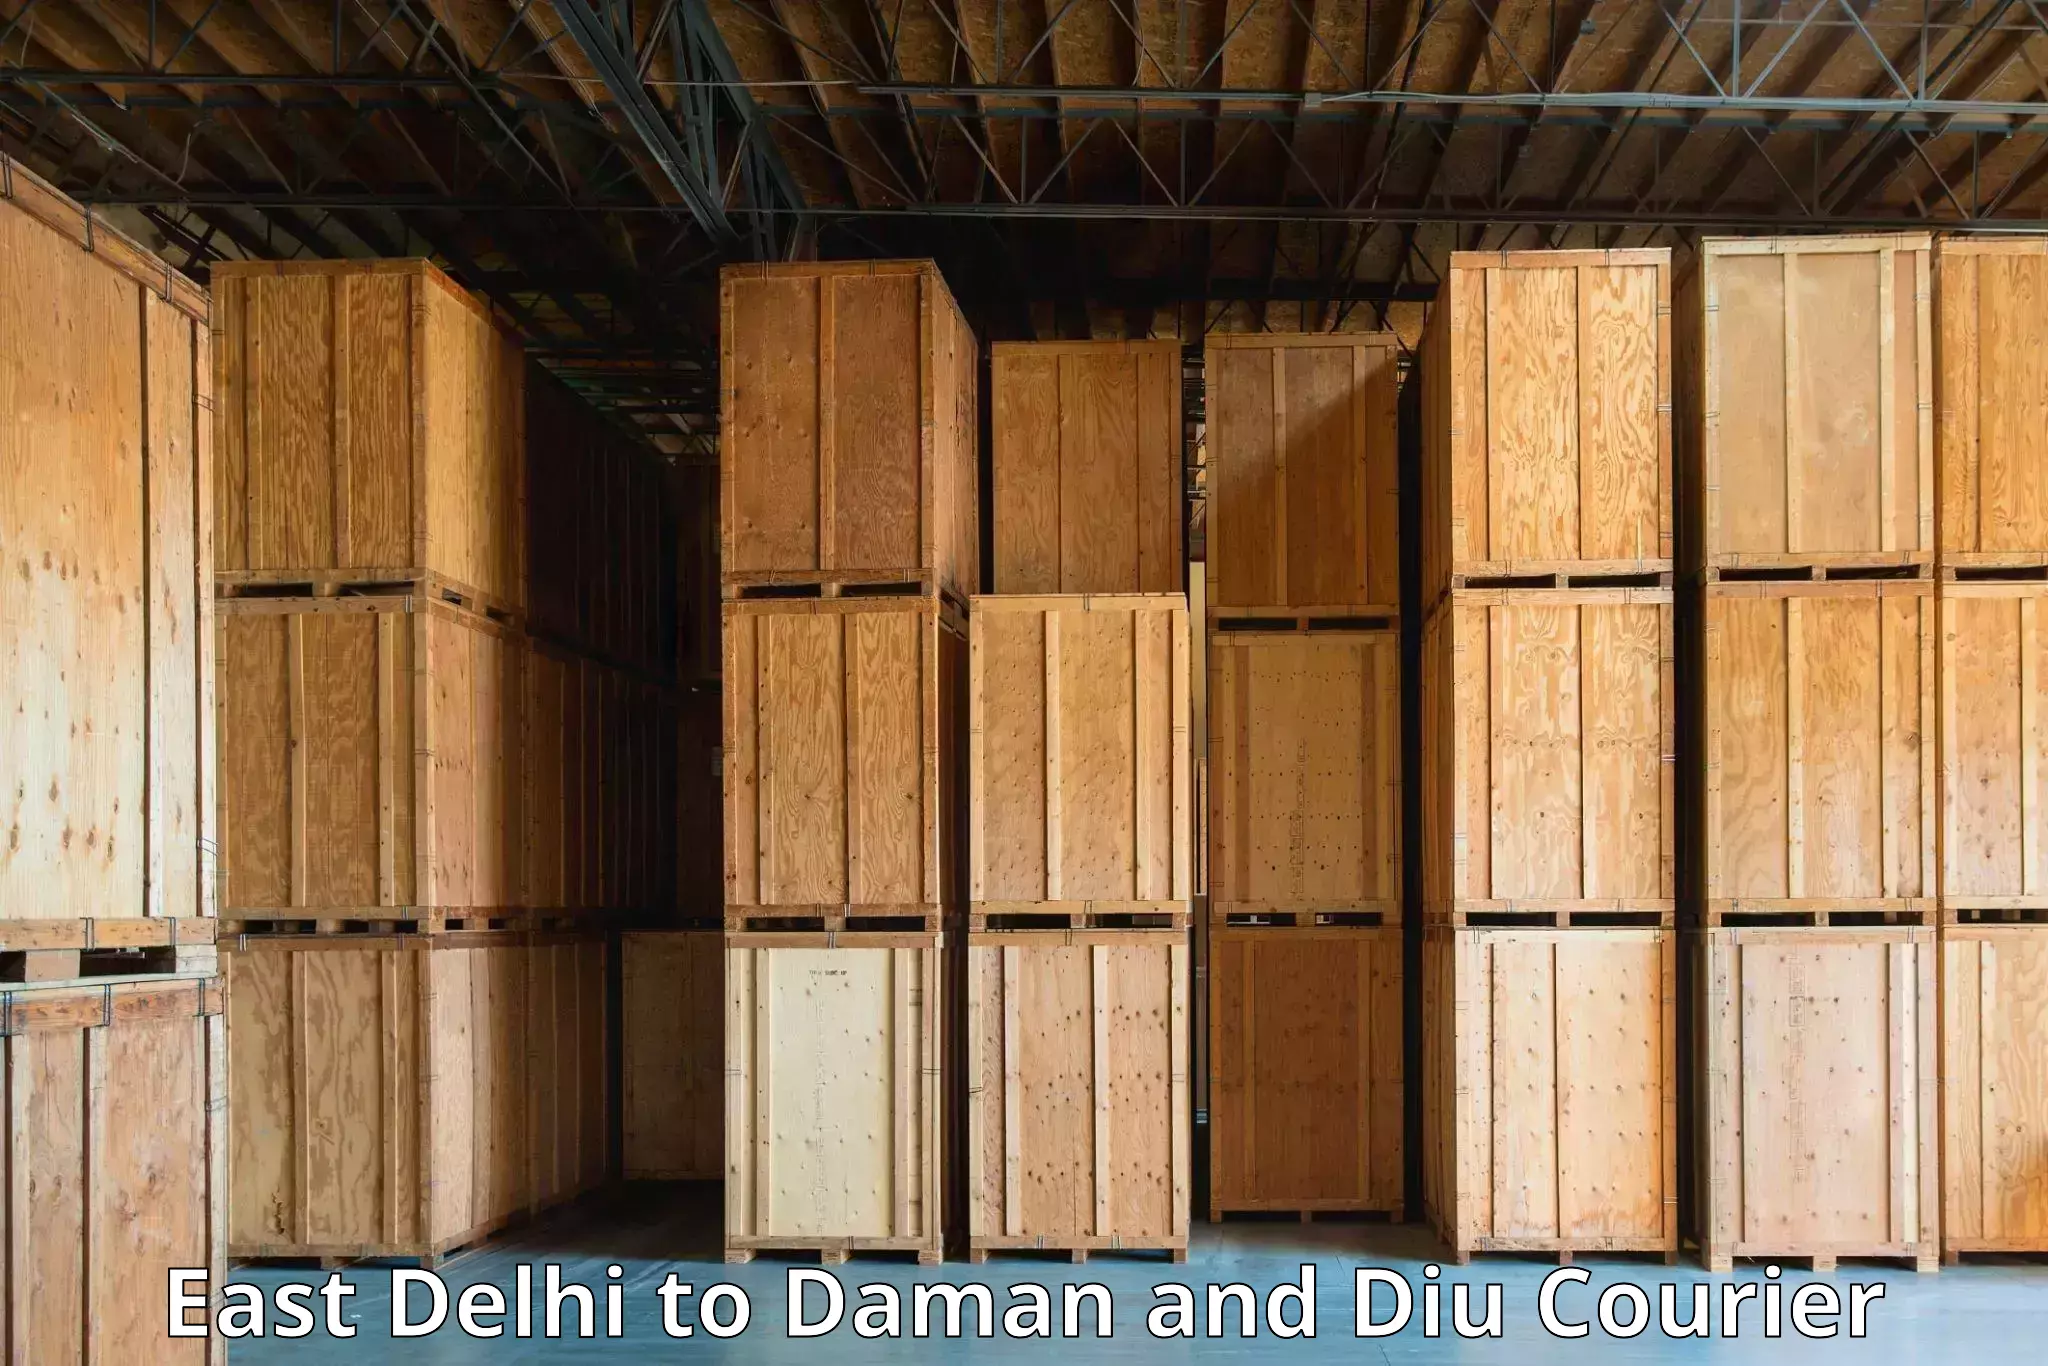 Express logistics providers East Delhi to Daman